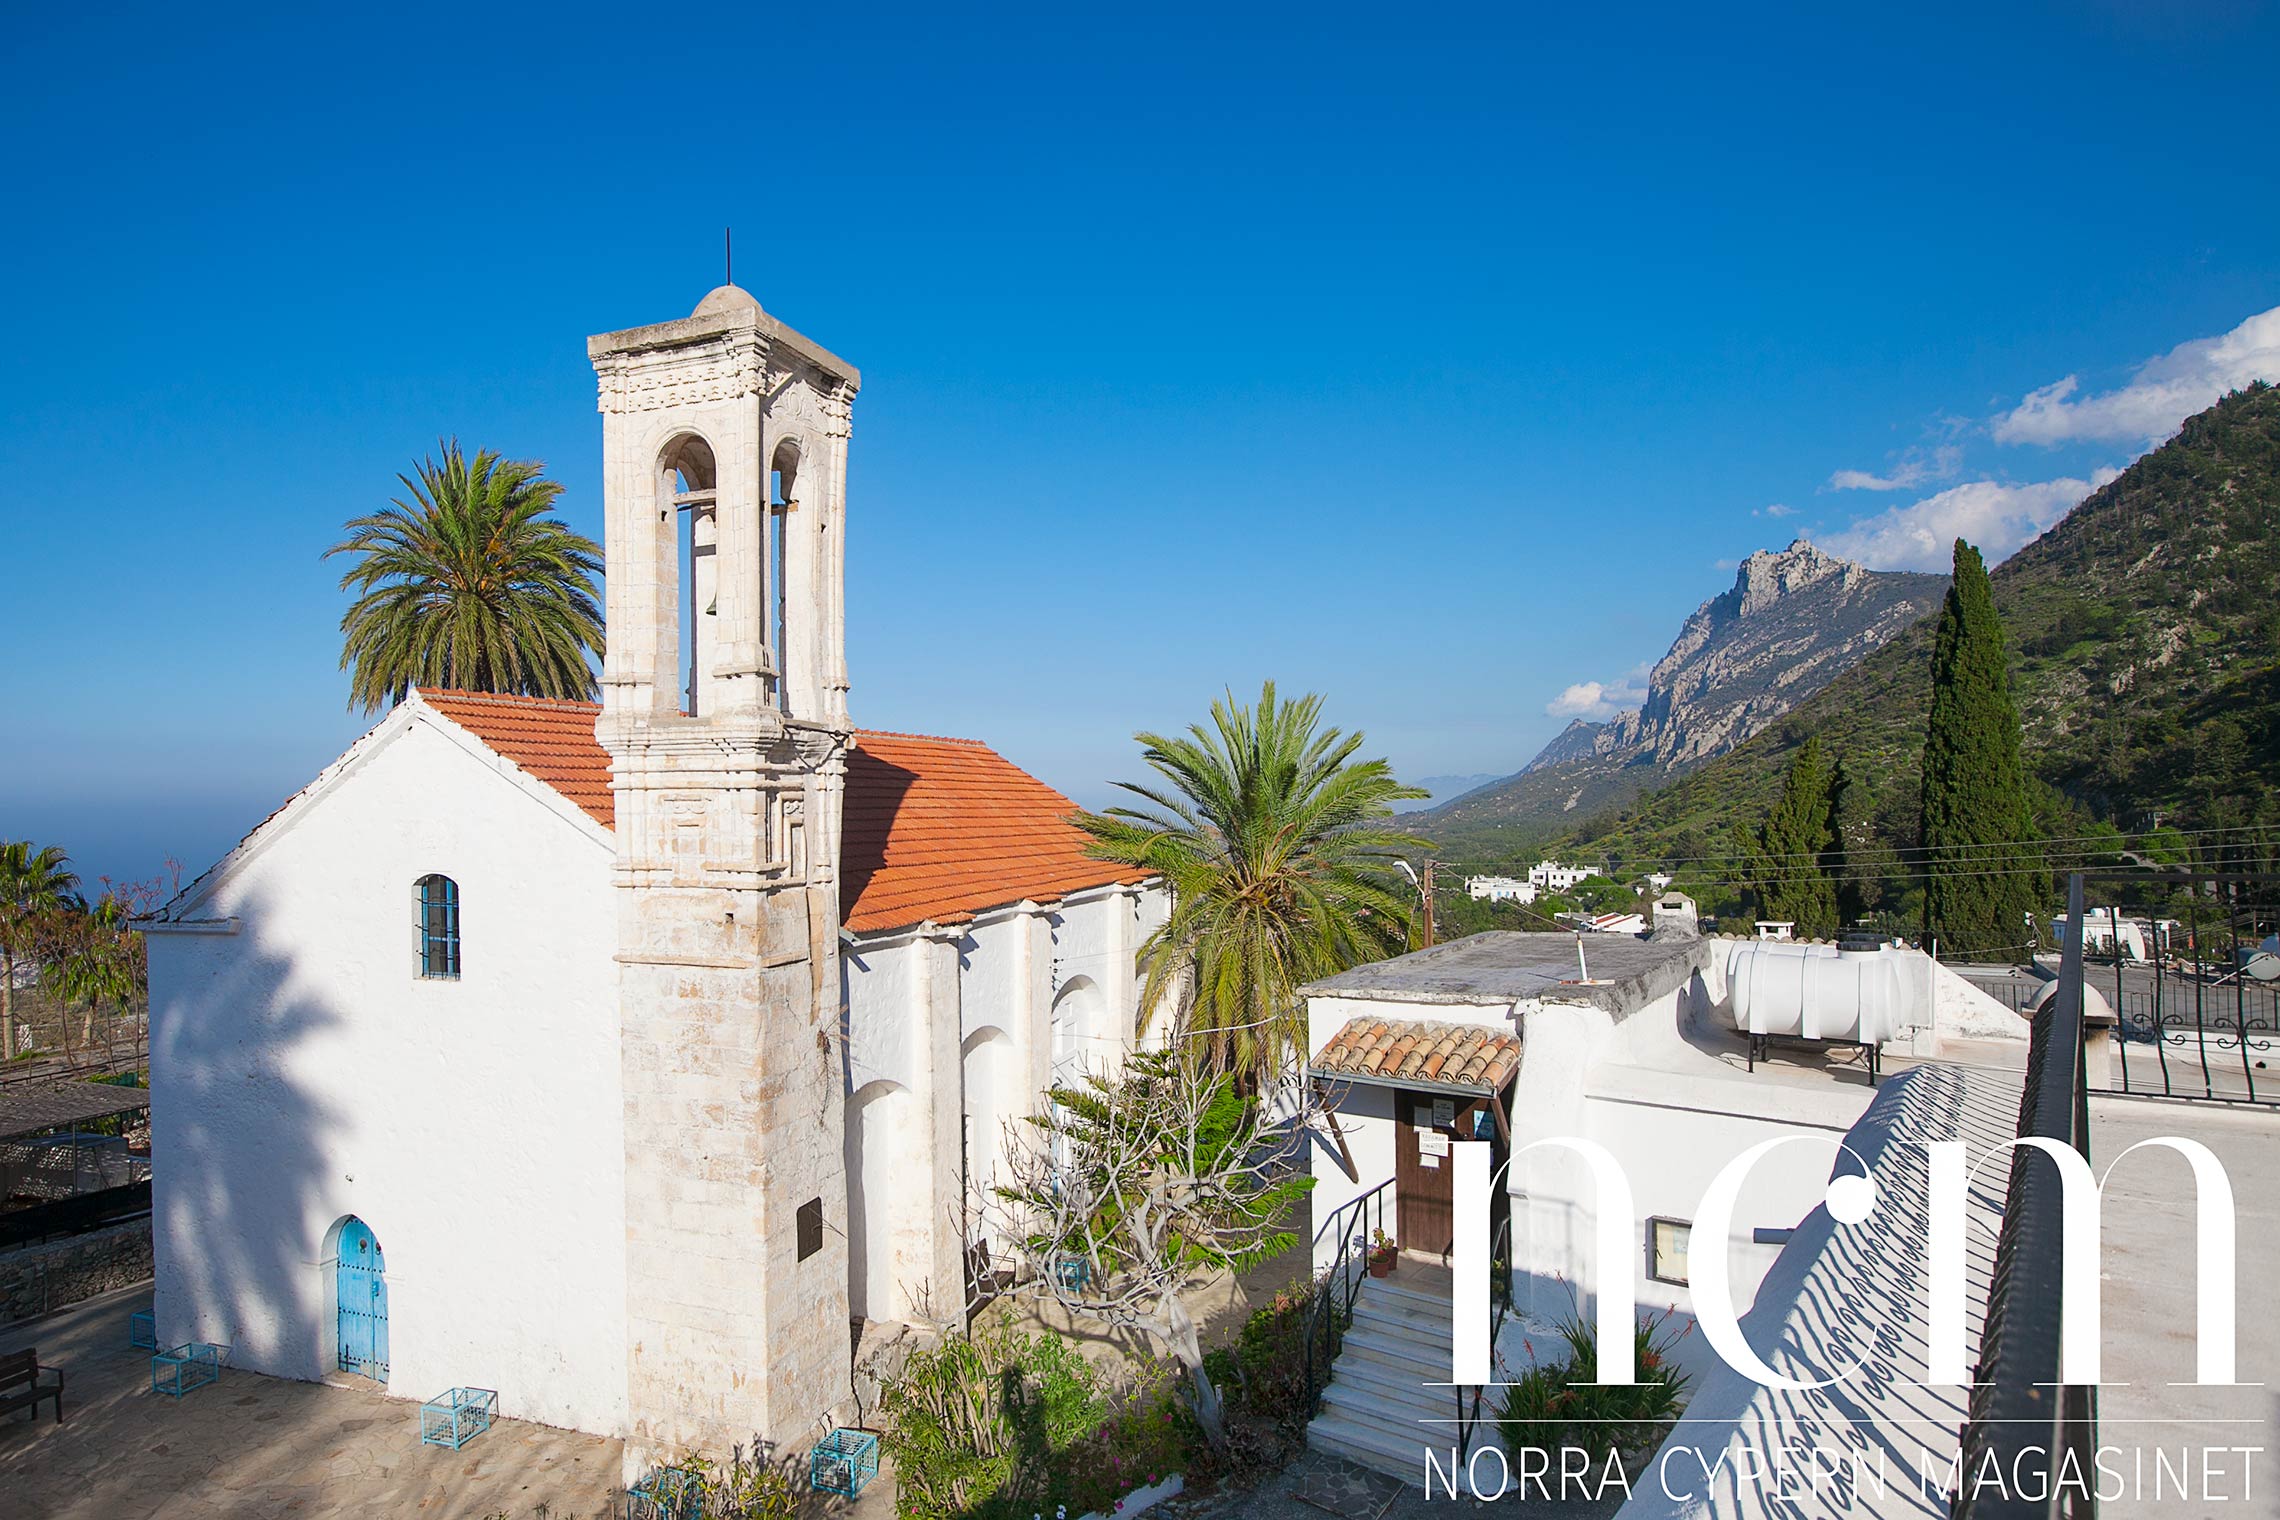 atte och kristinas hus ligger bredvid kyrkan i karmi på norra cypern